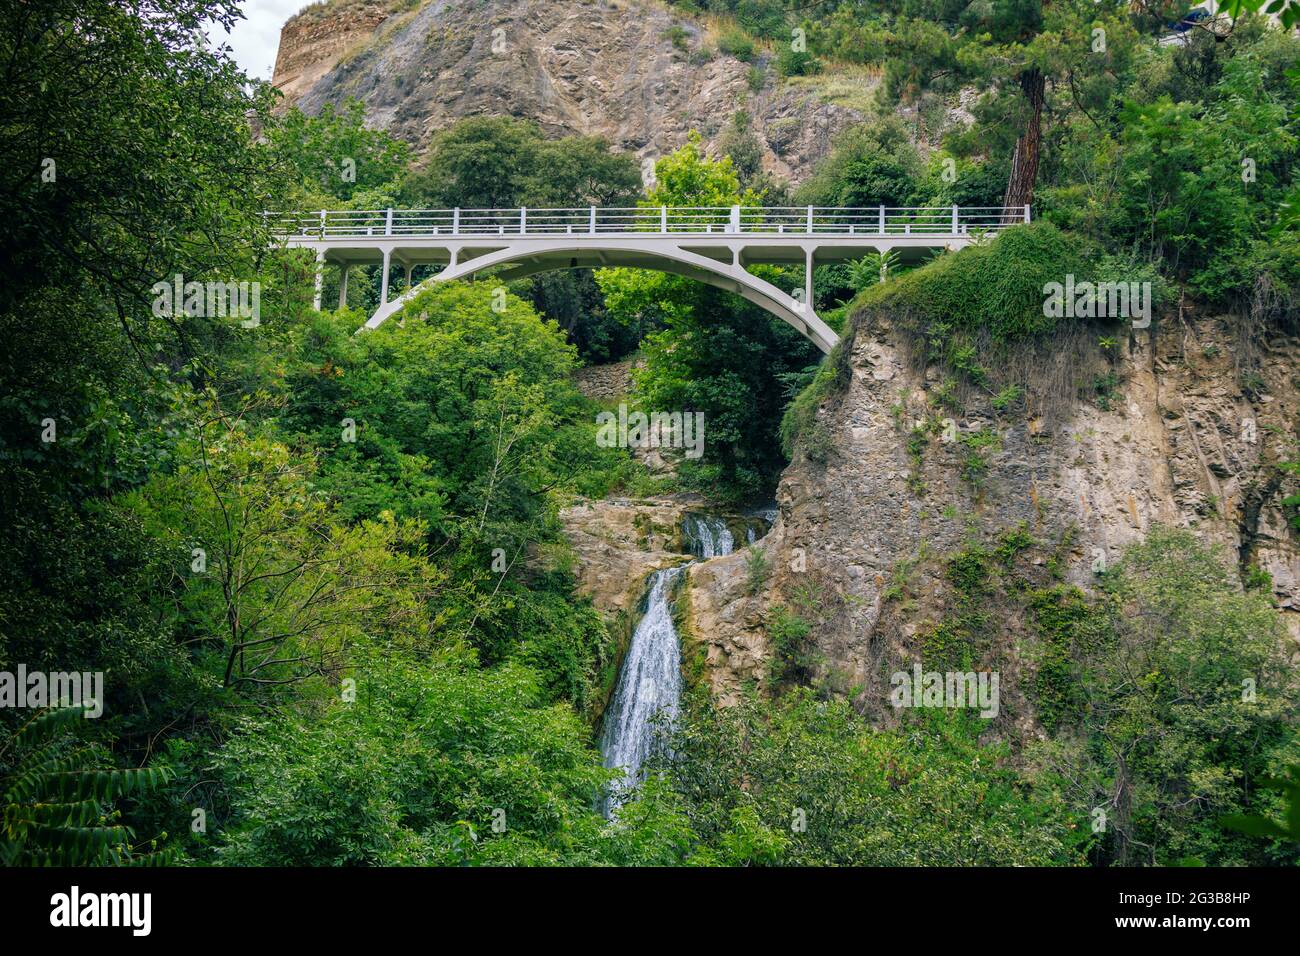 Magnifique paysage d'été du jardin botanique – Tbilissi, Géorgie – feuillage luxuriant, montagnes, pont et chute d'eau. Banque D'Images